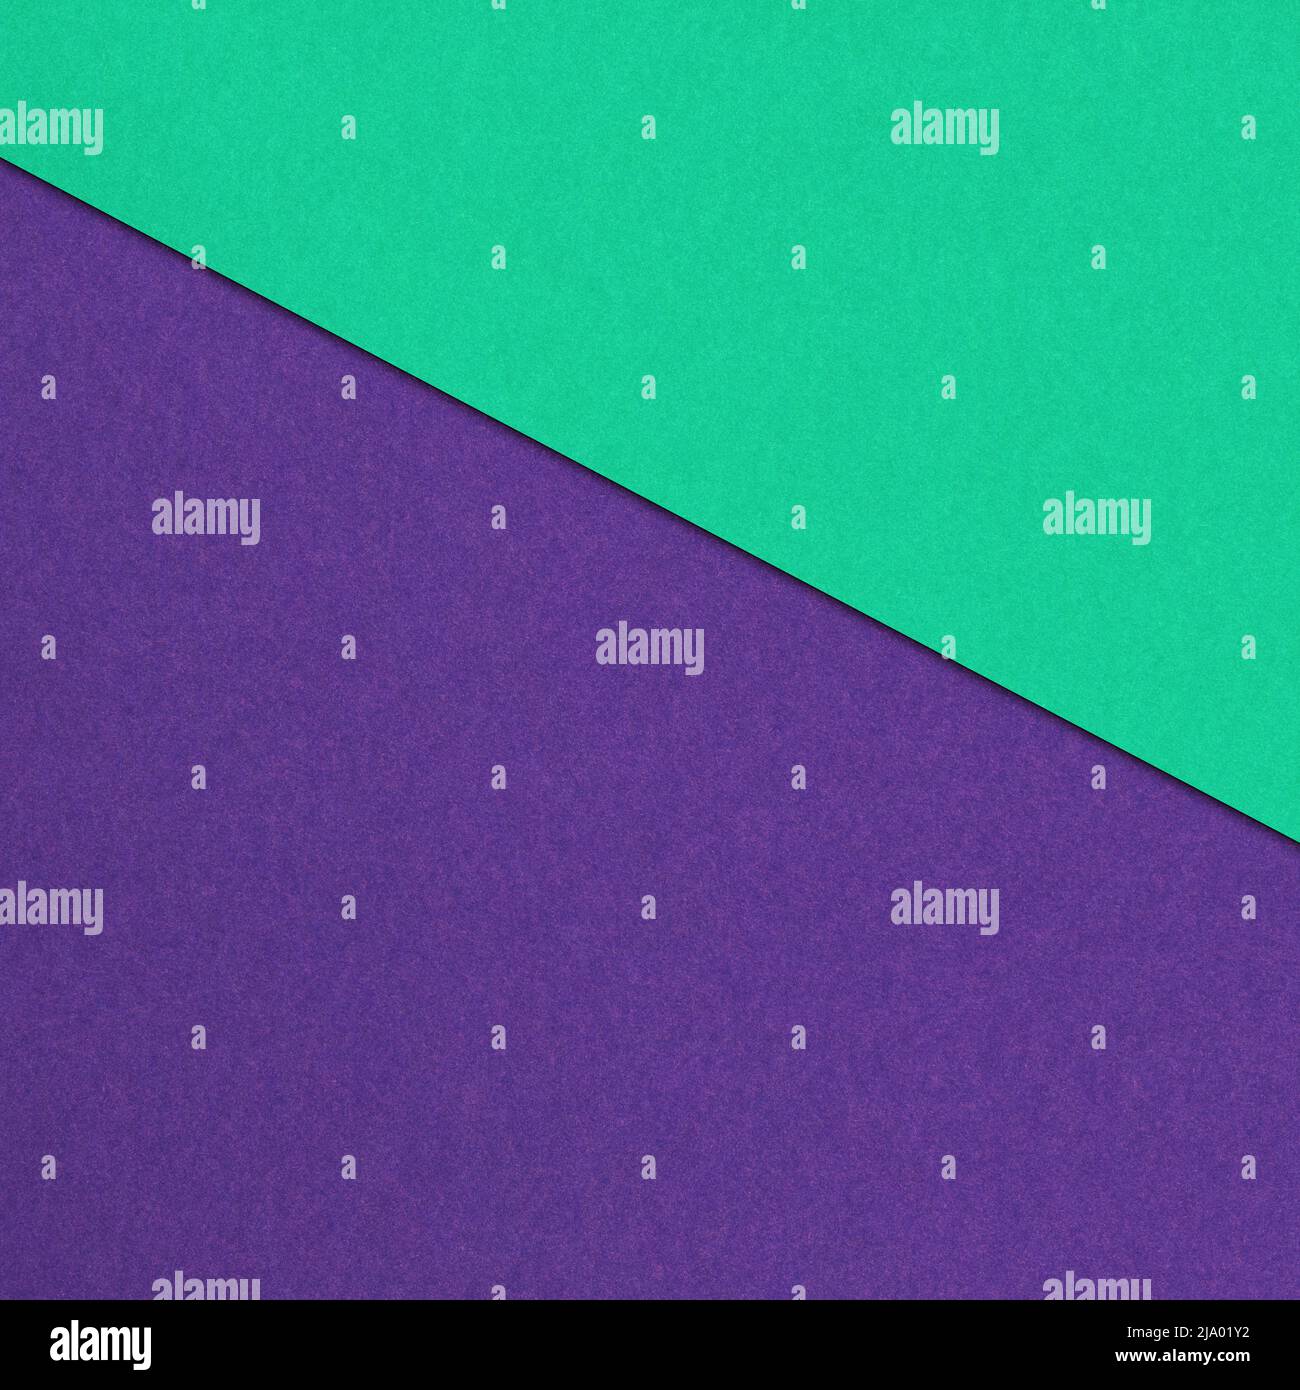 Quadratische Zusammensetzung von farbigen Papiertexten. Lebendiger Farbhintergrund für Ihre Objekte. Einfaches Grafikelement für die weitere Arbeit. Stockfoto